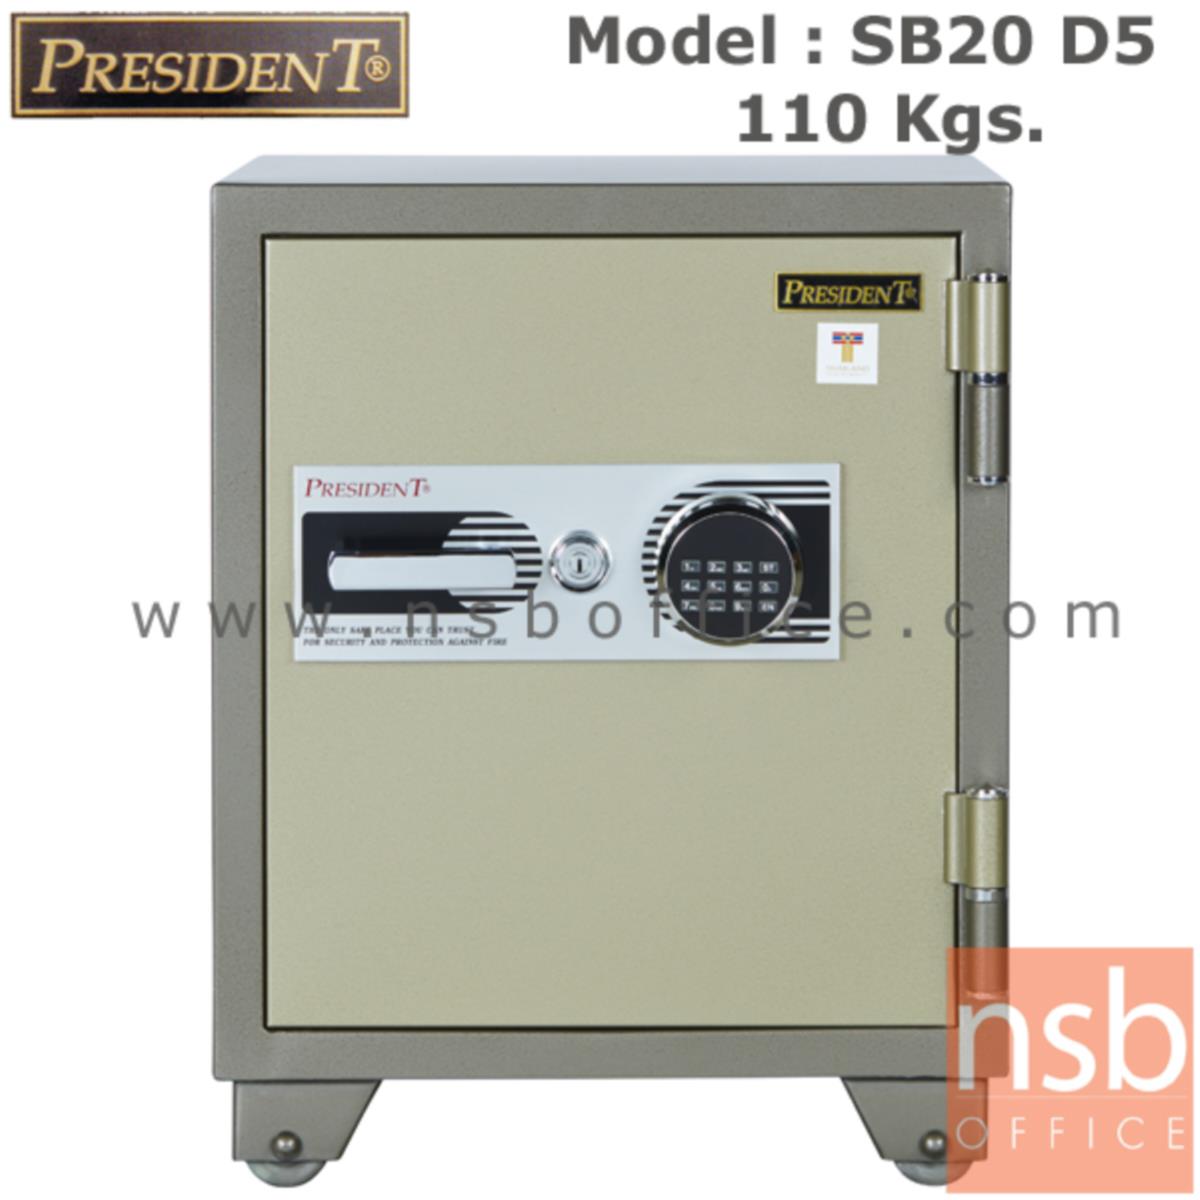 ตู้เซฟนิรภัยชนิดดิจิตอลแบบใหม่ 110 กก. รุ่น PRESIDENT-SB20D มี 1 กุญแจ 1 รหัส (รหัสใช้กดหน้าตู้)